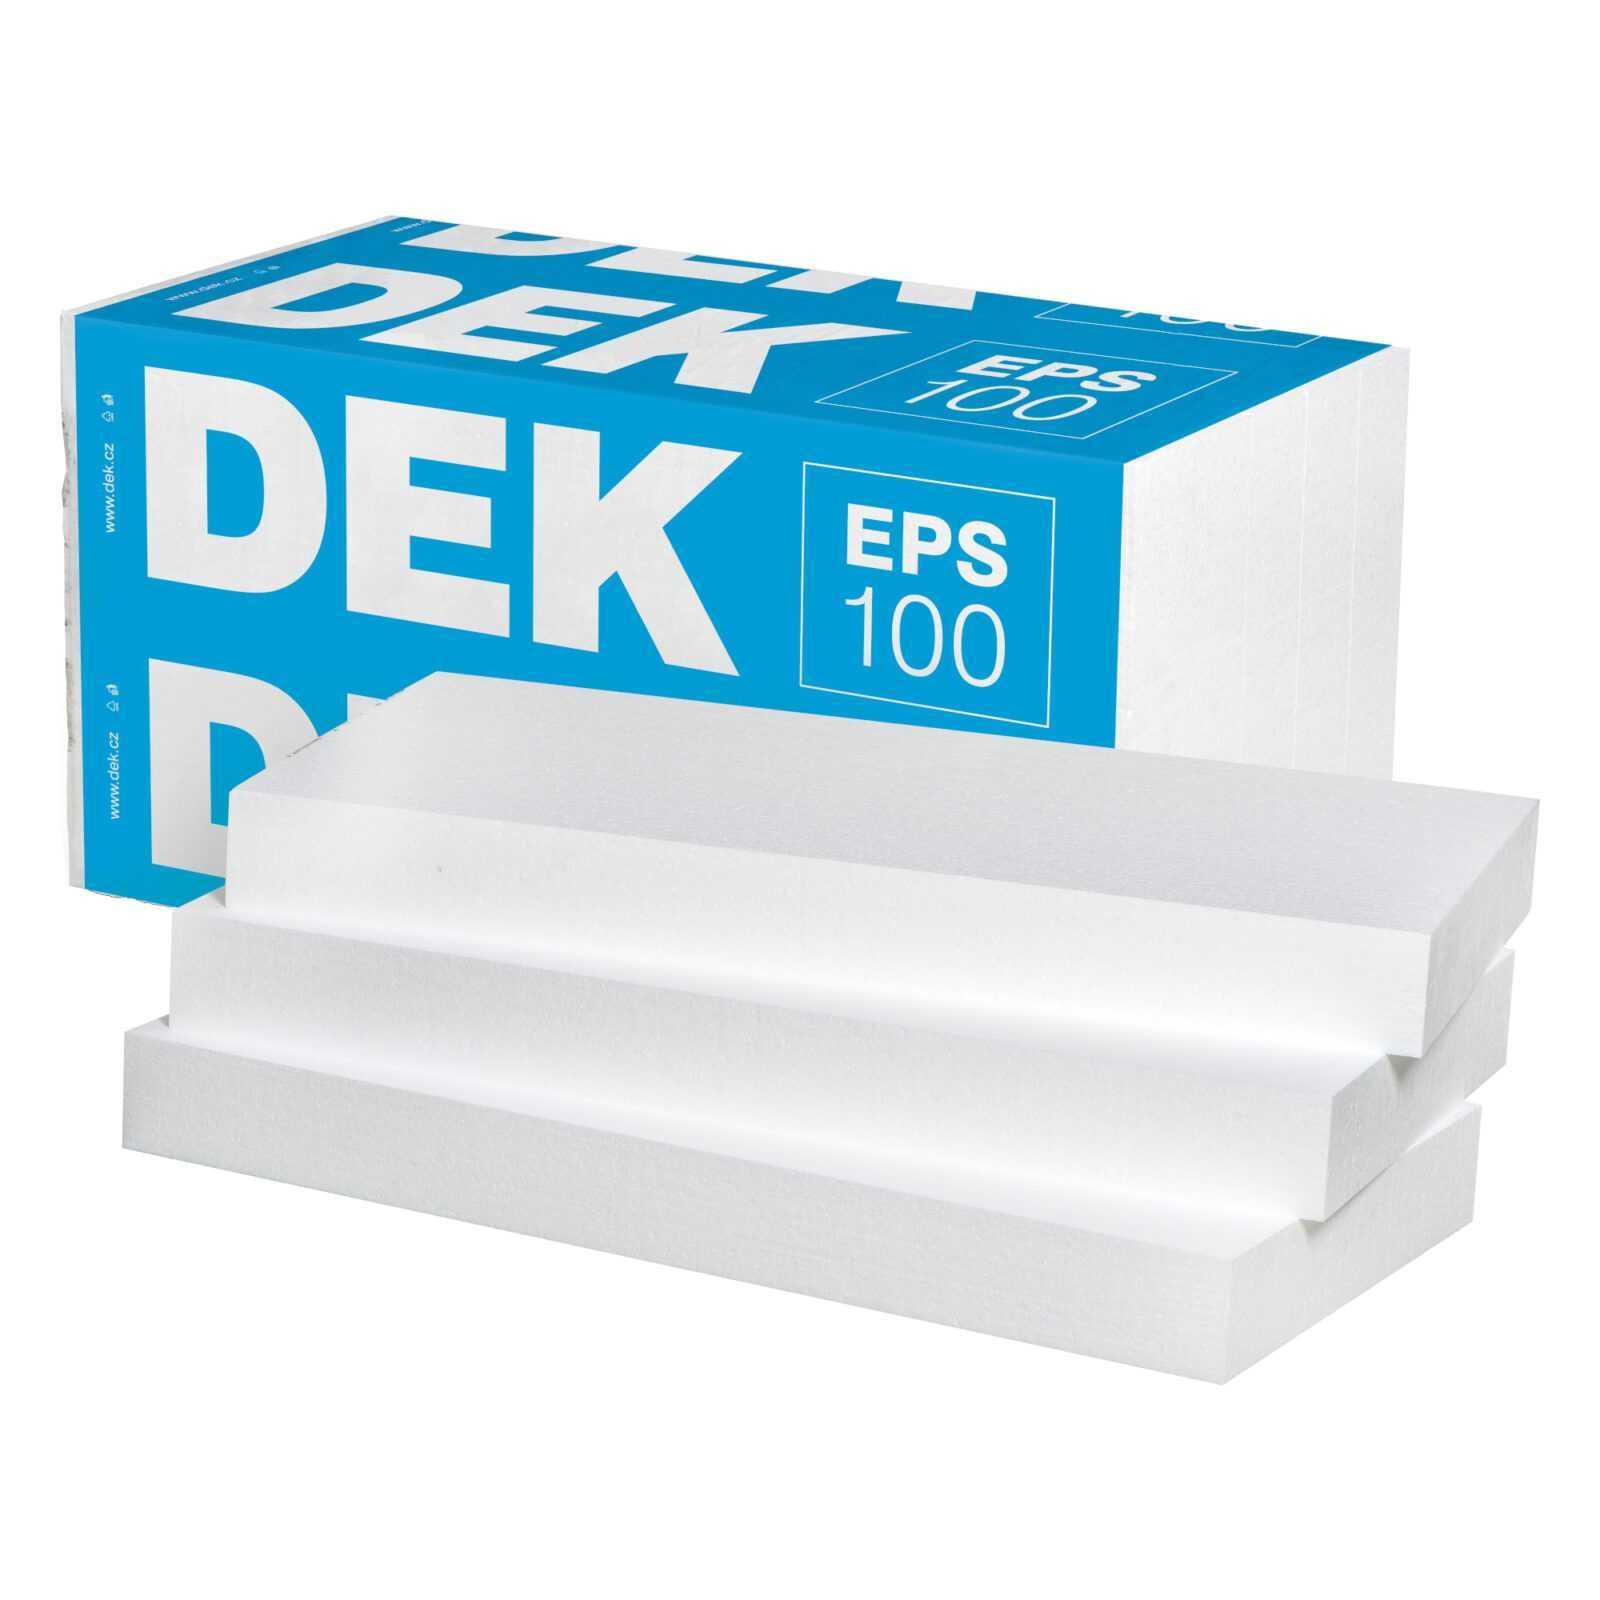 Tepelná izolace DEK EPS 100 70 mm (3